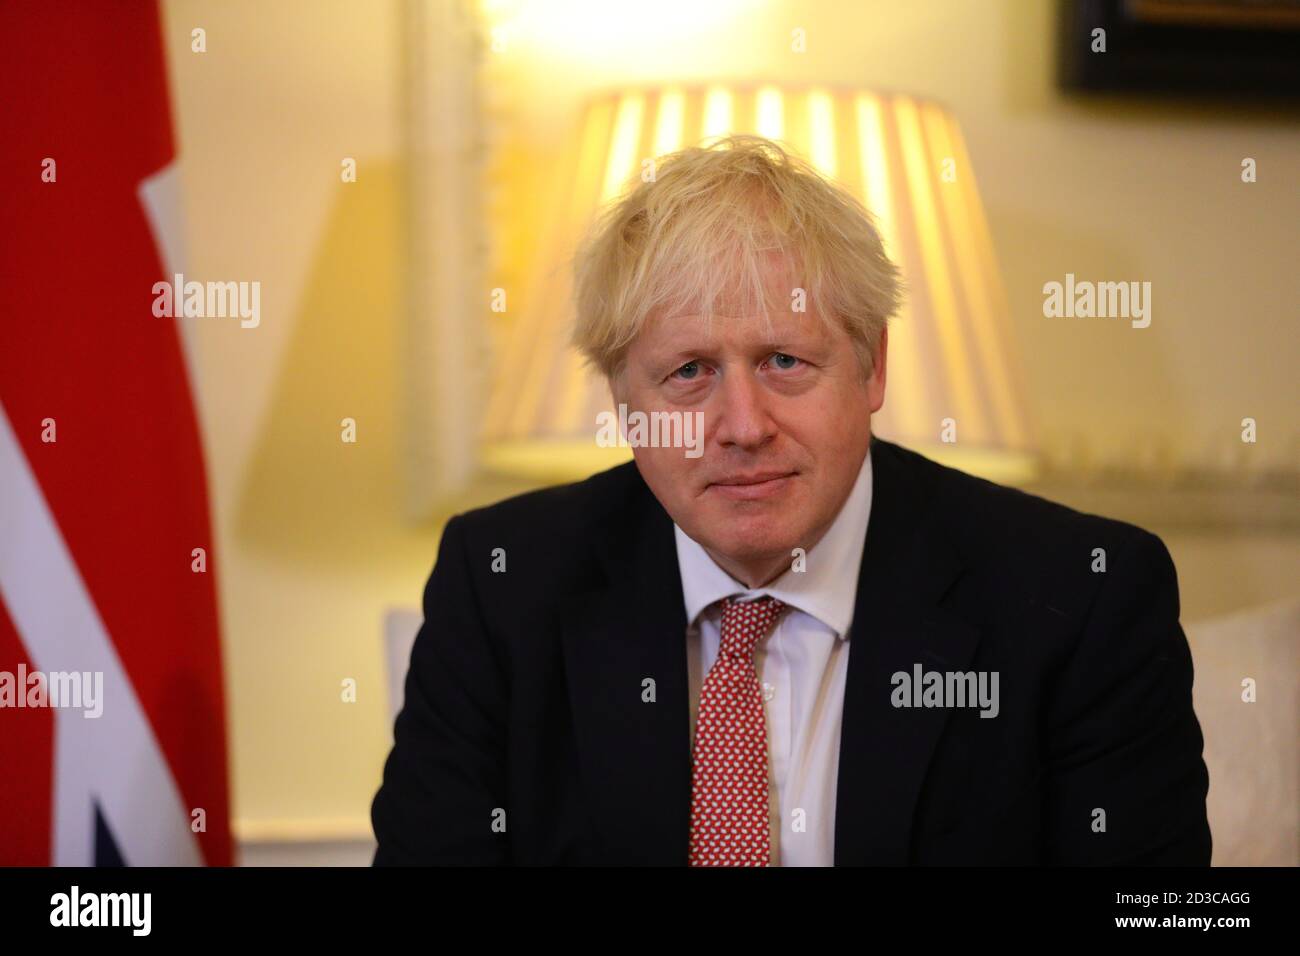 Premierminister Boris Johnson bei einem Treffen mit dem Präsidenten der Ukraine, Wolodymyr Zelenskyy, in der Downing Street, London, um angesichts des "destabilisierenden Verhaltens" Russlands gegenüber dem Land eine strategische Partnerschaft mit dem Präsidenten zu unterzeichnen. Stockfoto